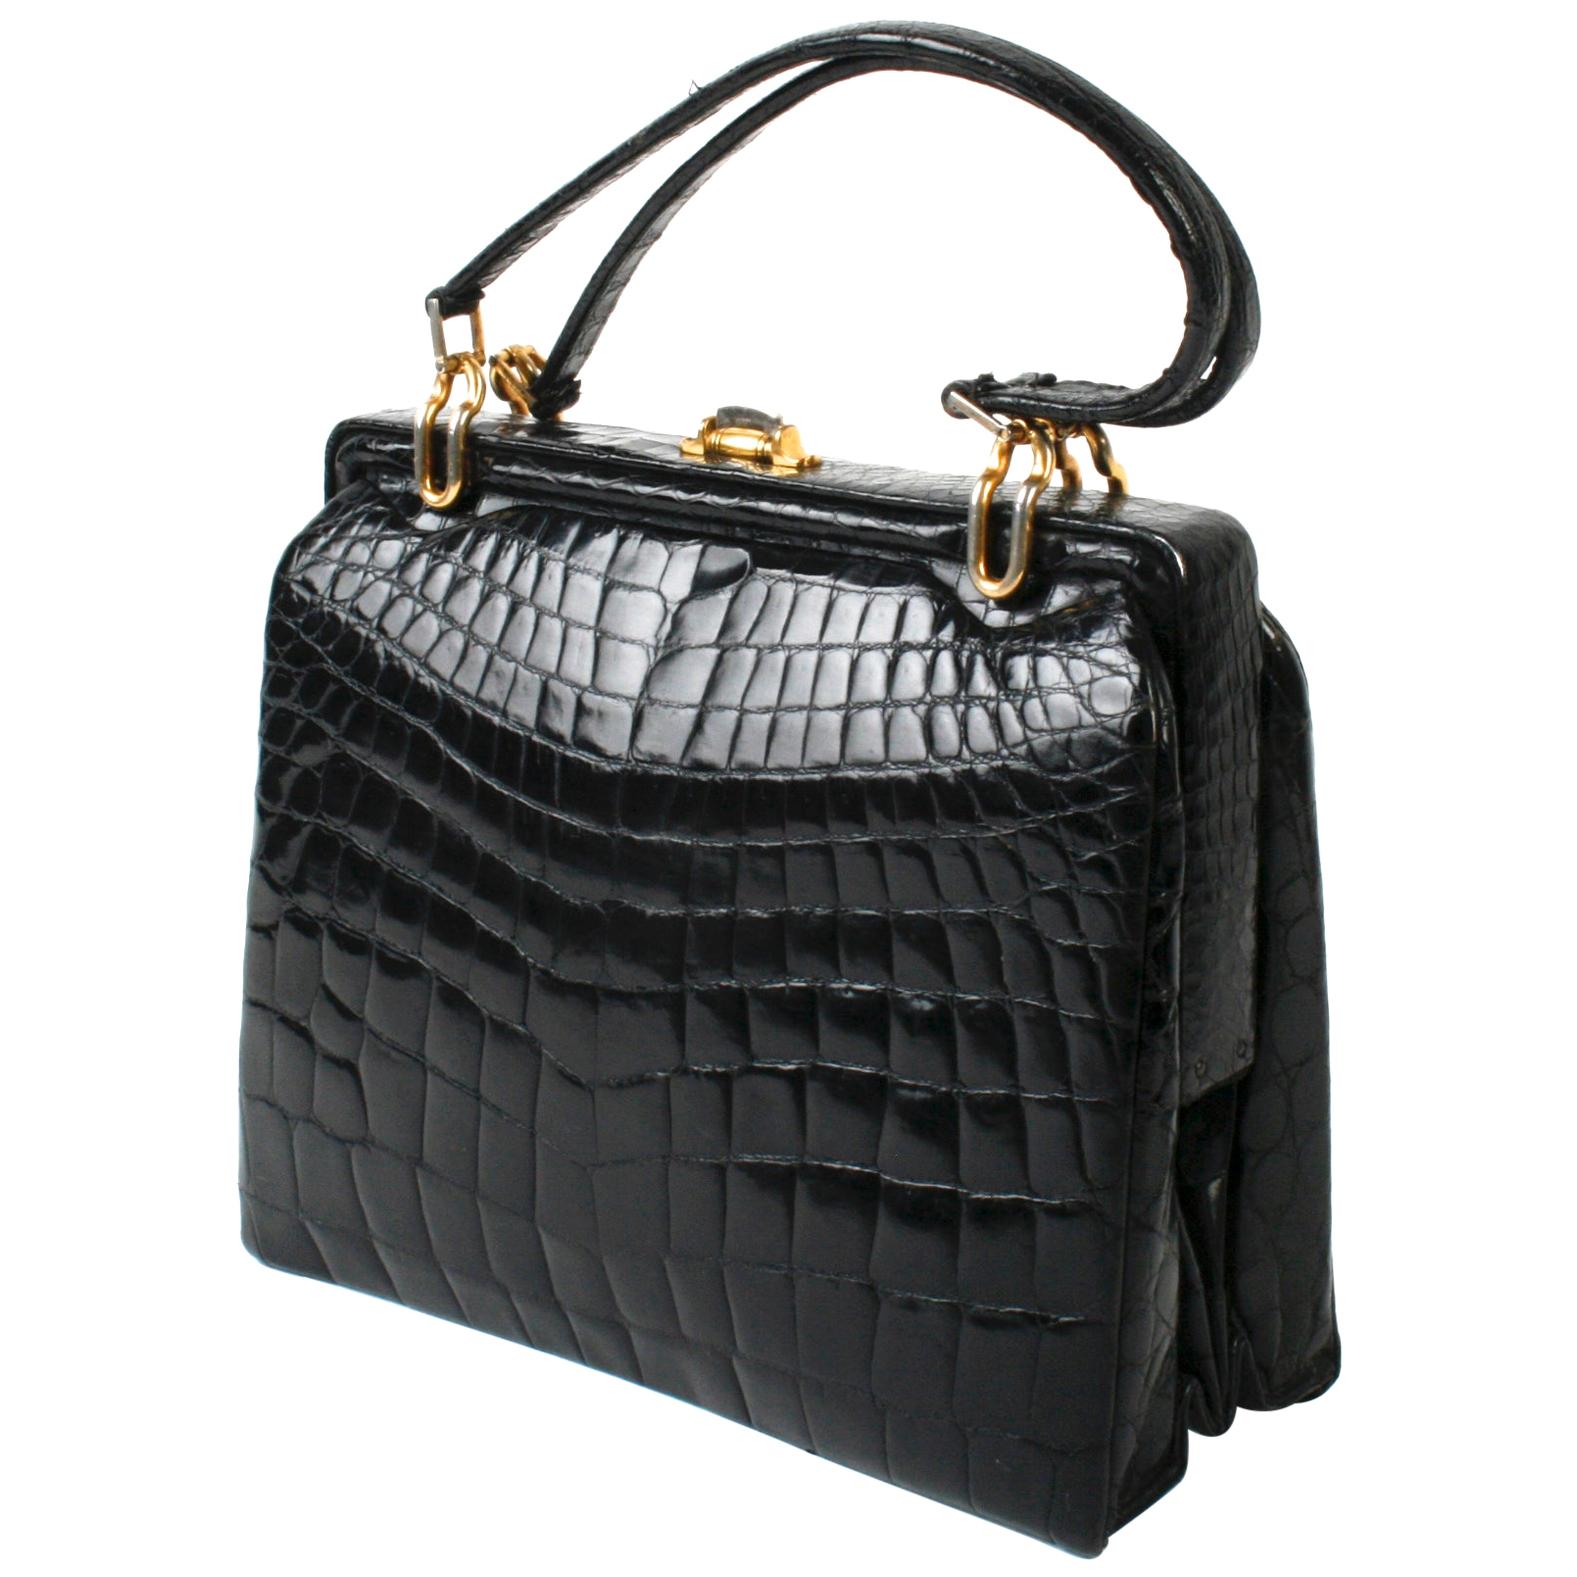 Black Alligator Handbag with Gold Tone Link Hardware